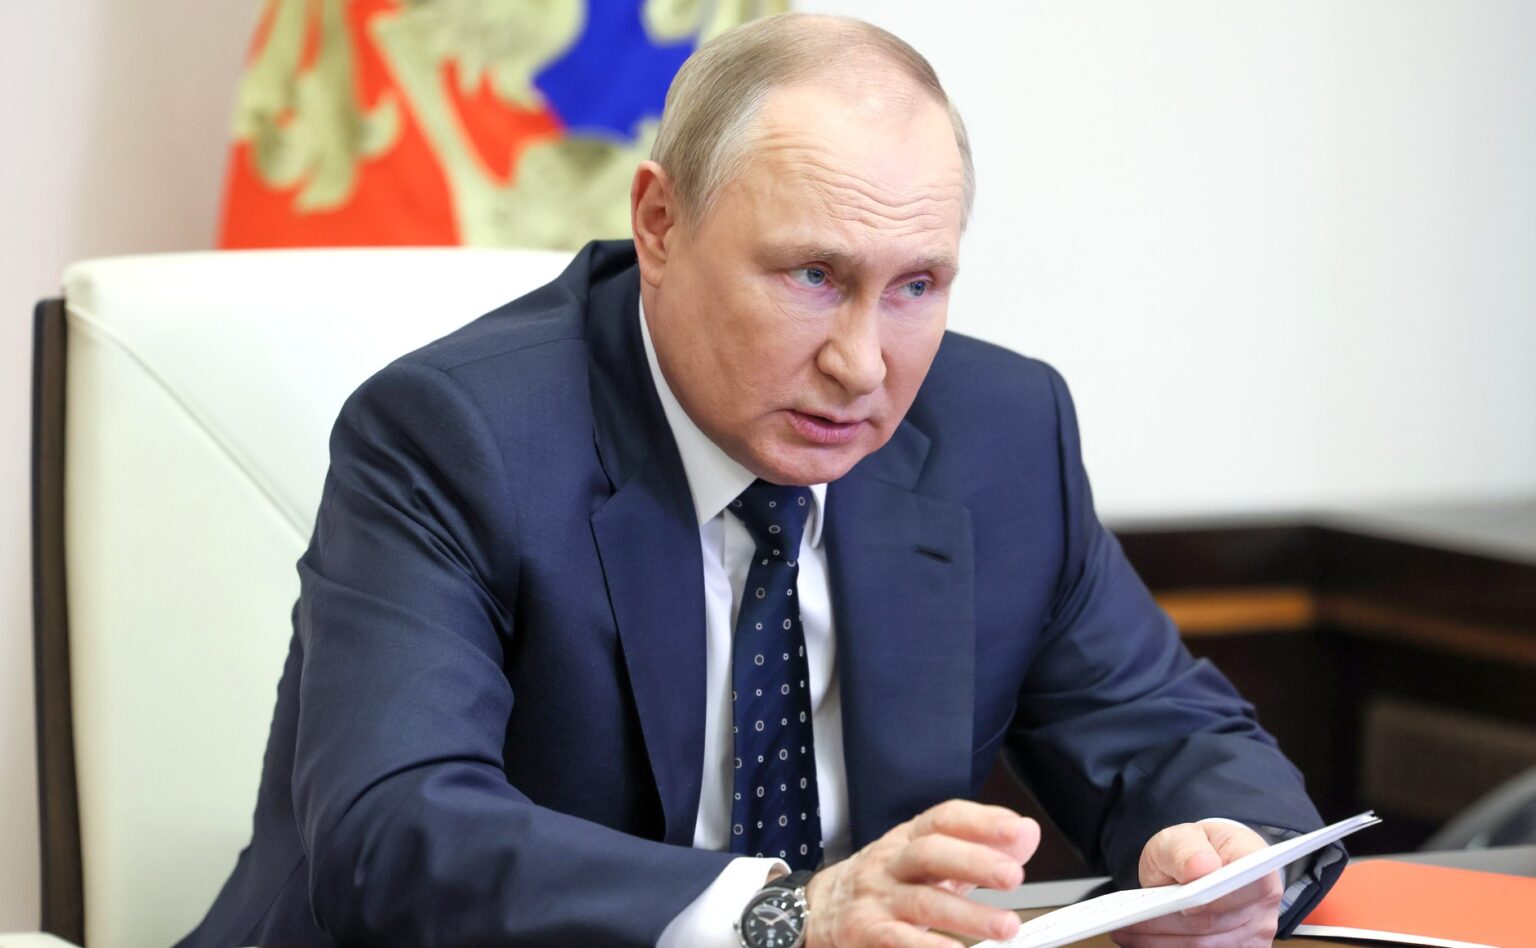 Come funziona lâ€™elezione del Presidente in Russia?